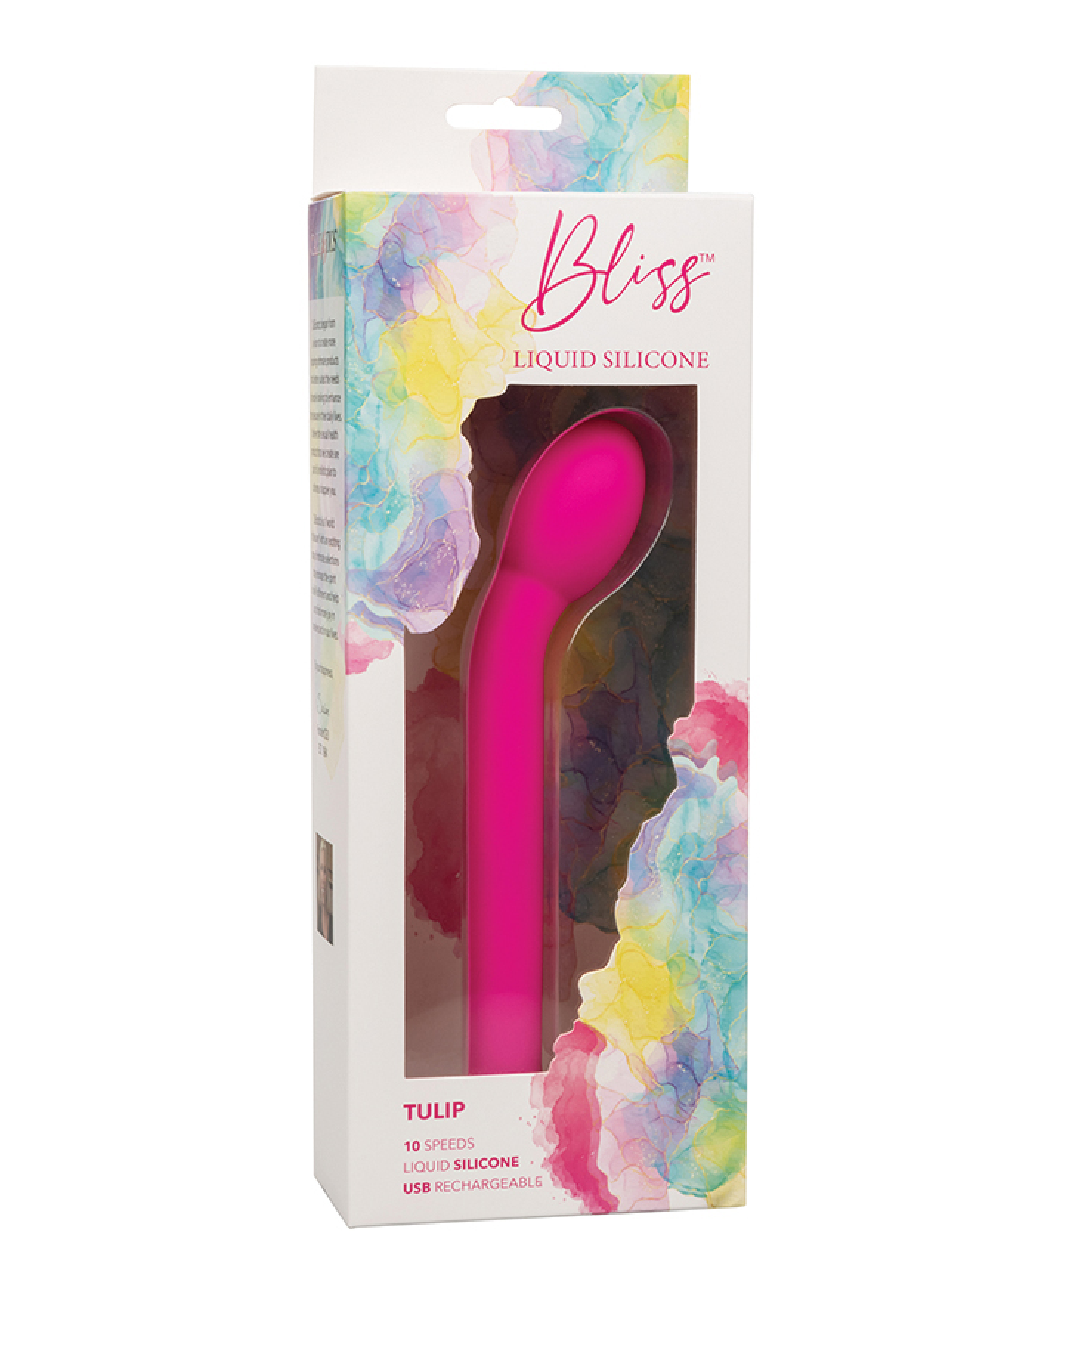 Bliss Tulip Beginner G-Spot Vibrator in box 